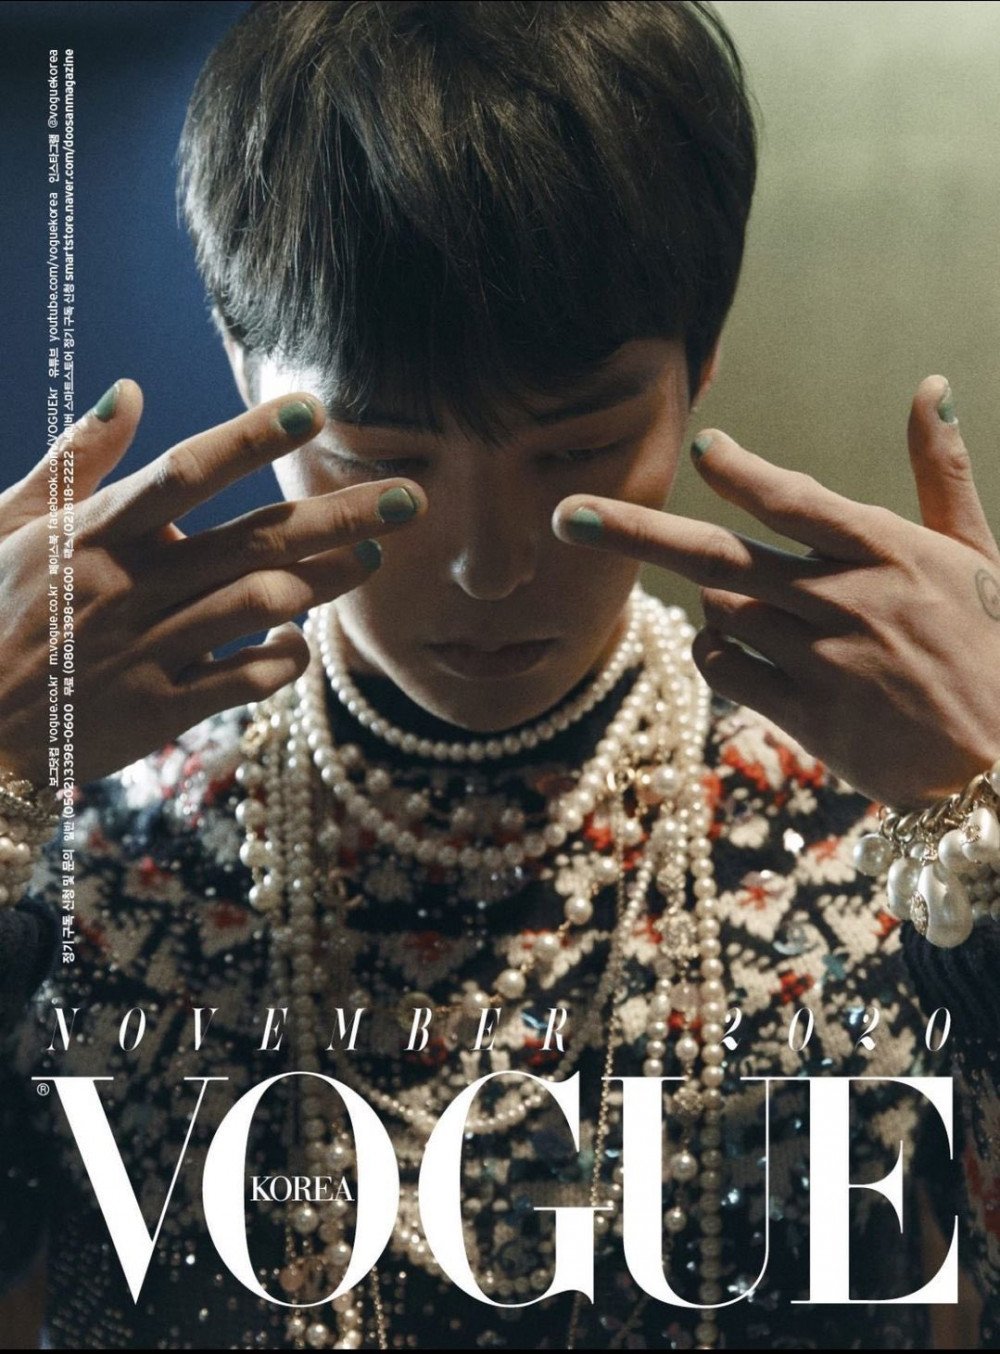 Tampilkan G-Dragon dengan 3 Sisi Berbeda, Vogue Korea Jadi Majalah Terlaris Bersampul Bintang Kpop